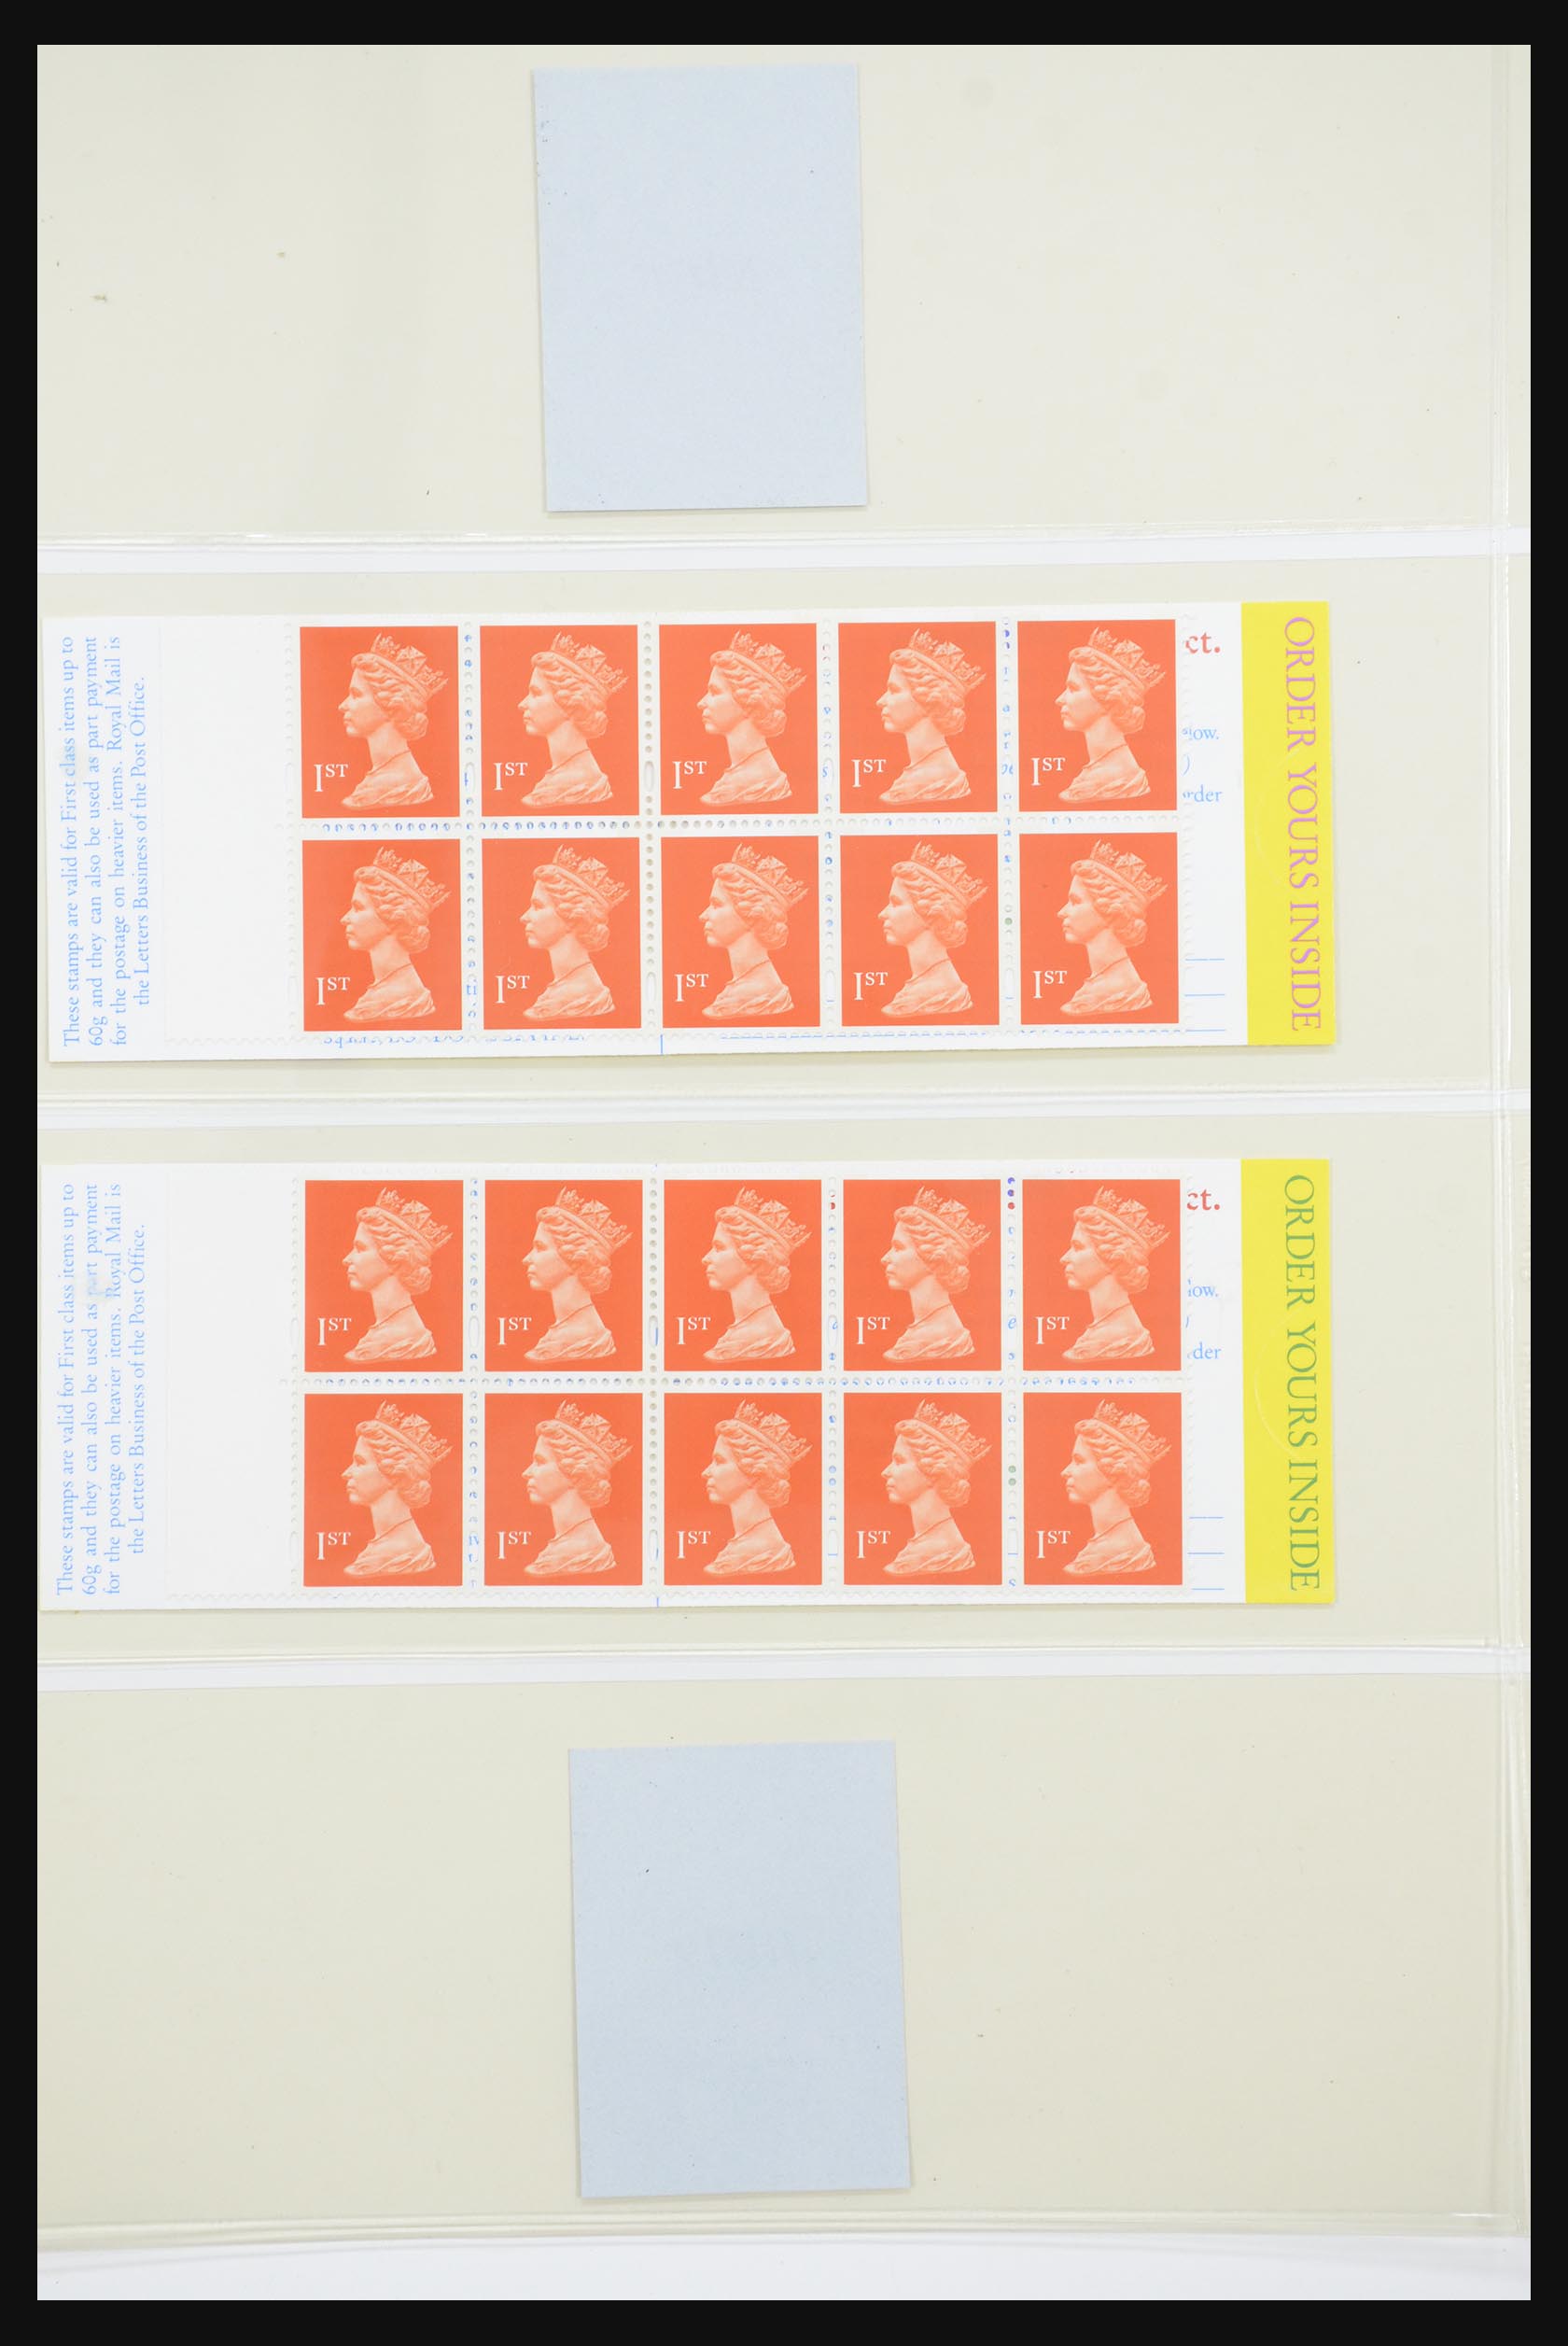 31960 128 - 31960 Engeland postzegelboekjes 1989-2000.